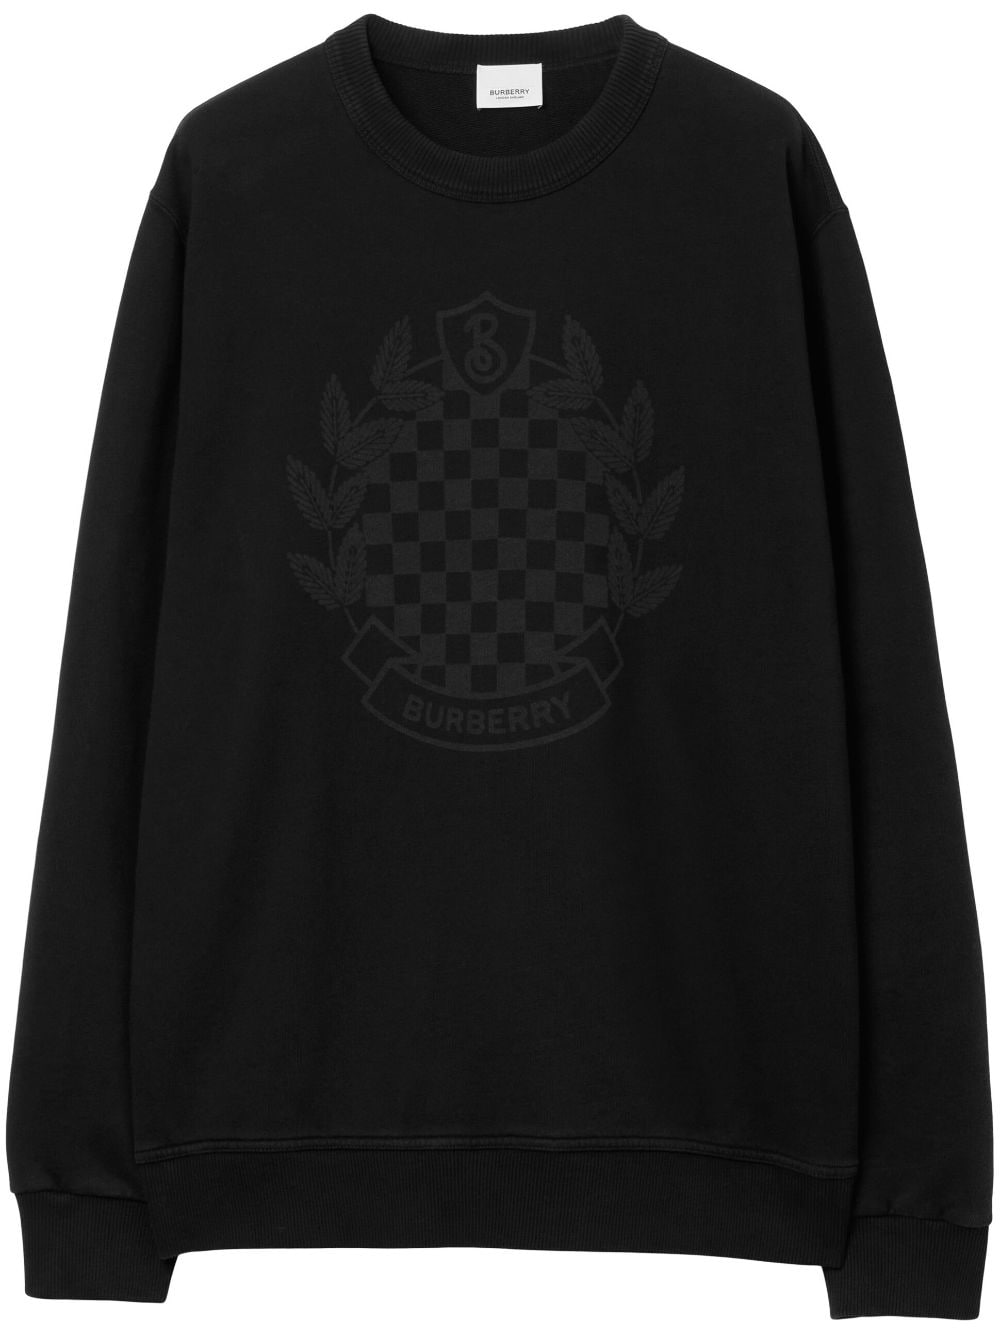 Chequered-crest cotton sweatshirt